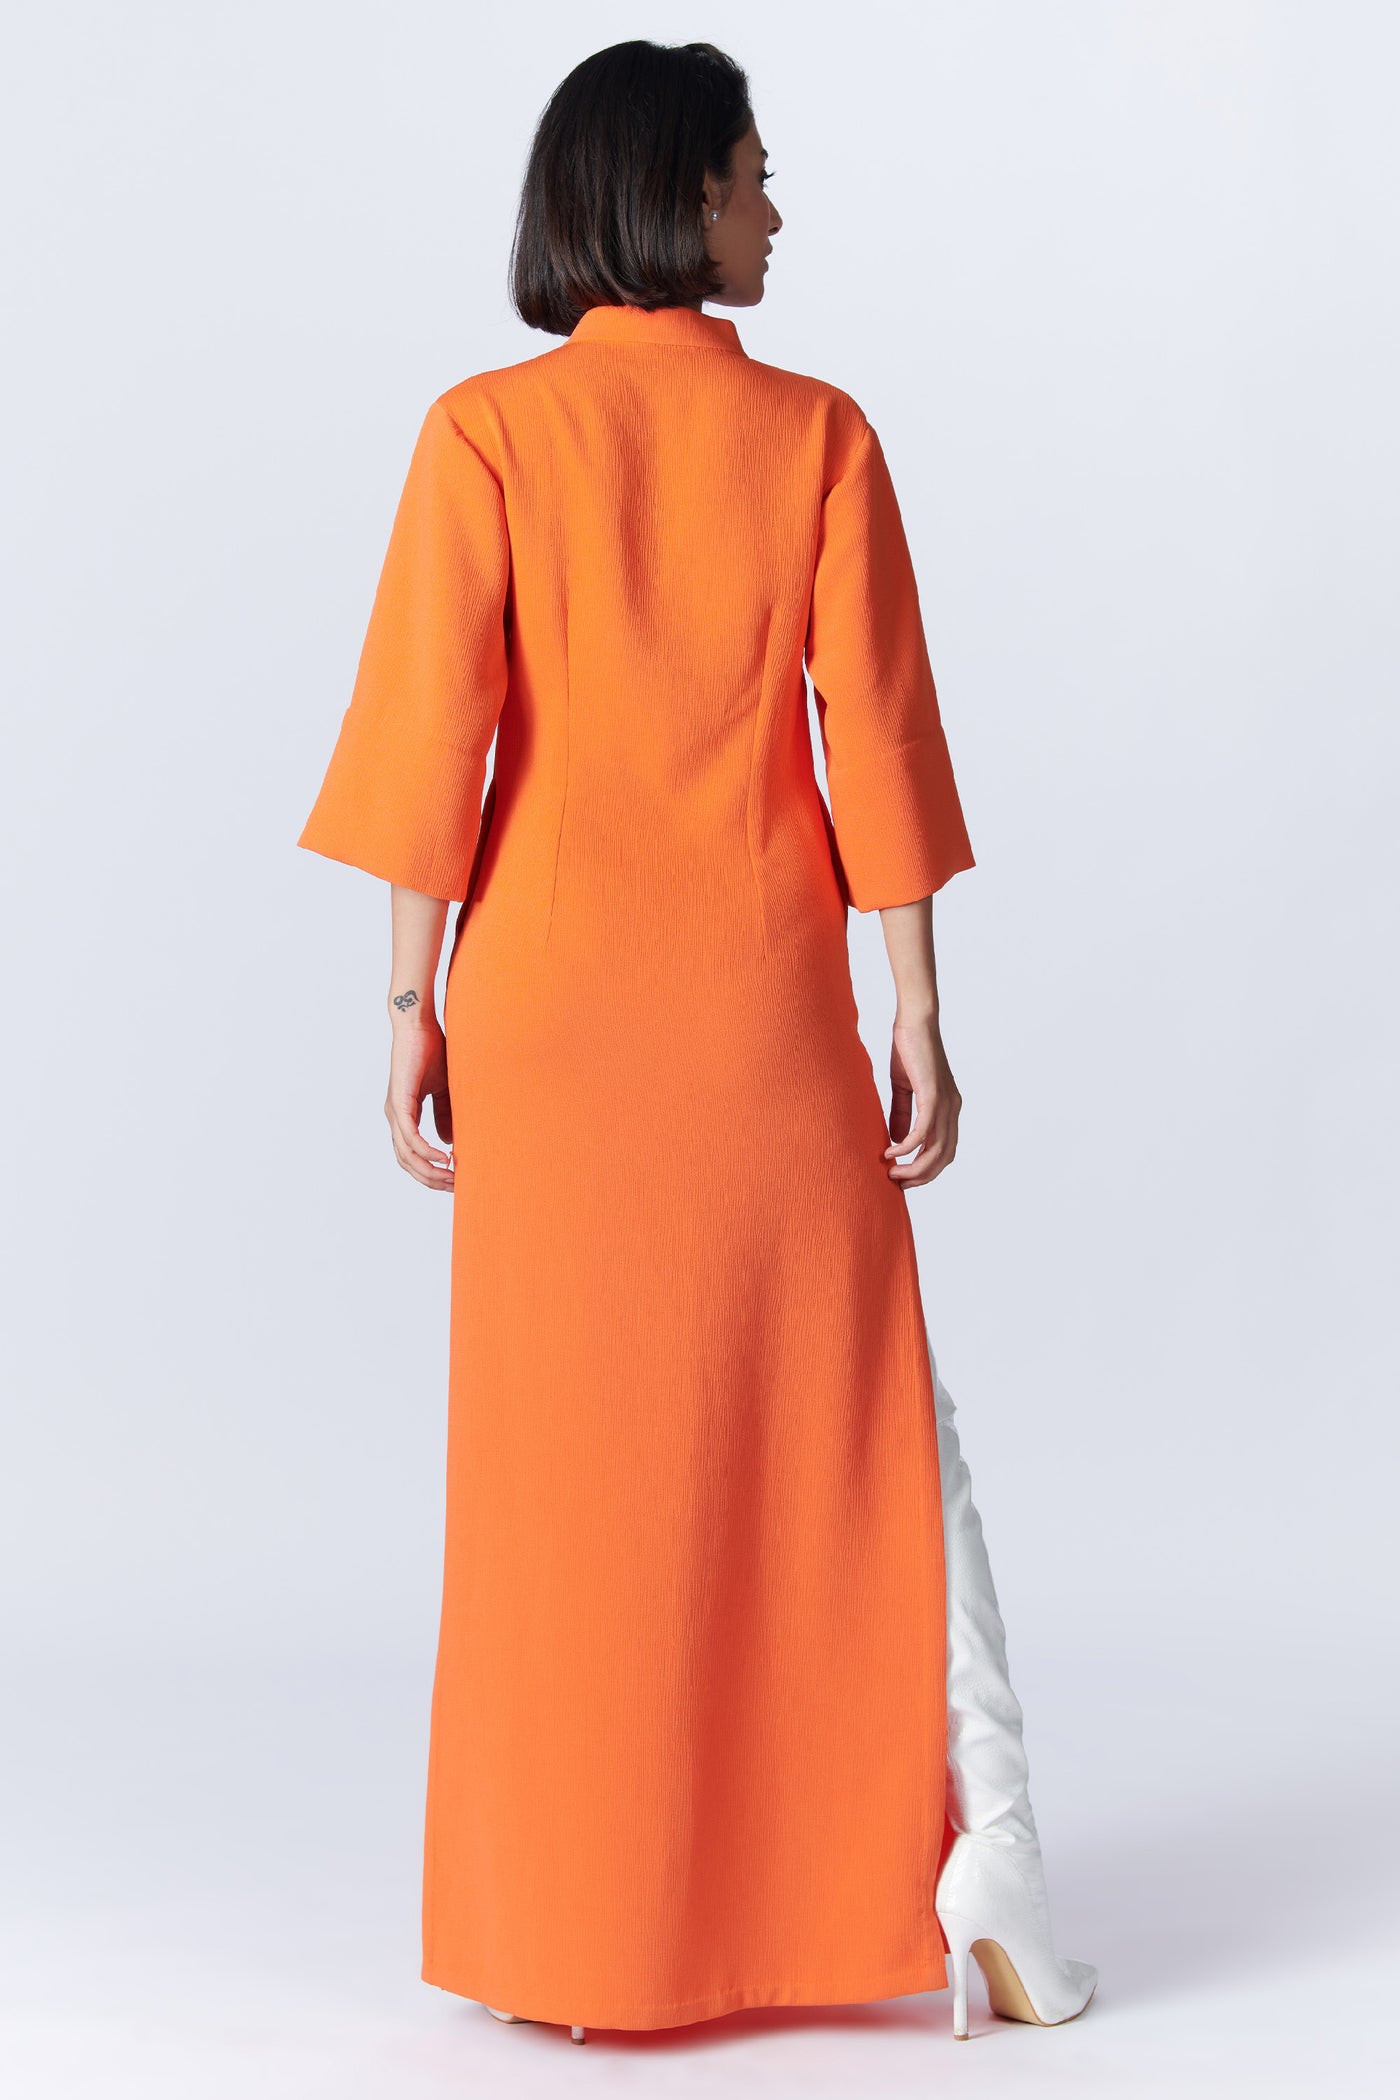 SN By Shantanu Nikhil SNCC Orange Tank Maxi dress indian designer wear online shopping melange singapore